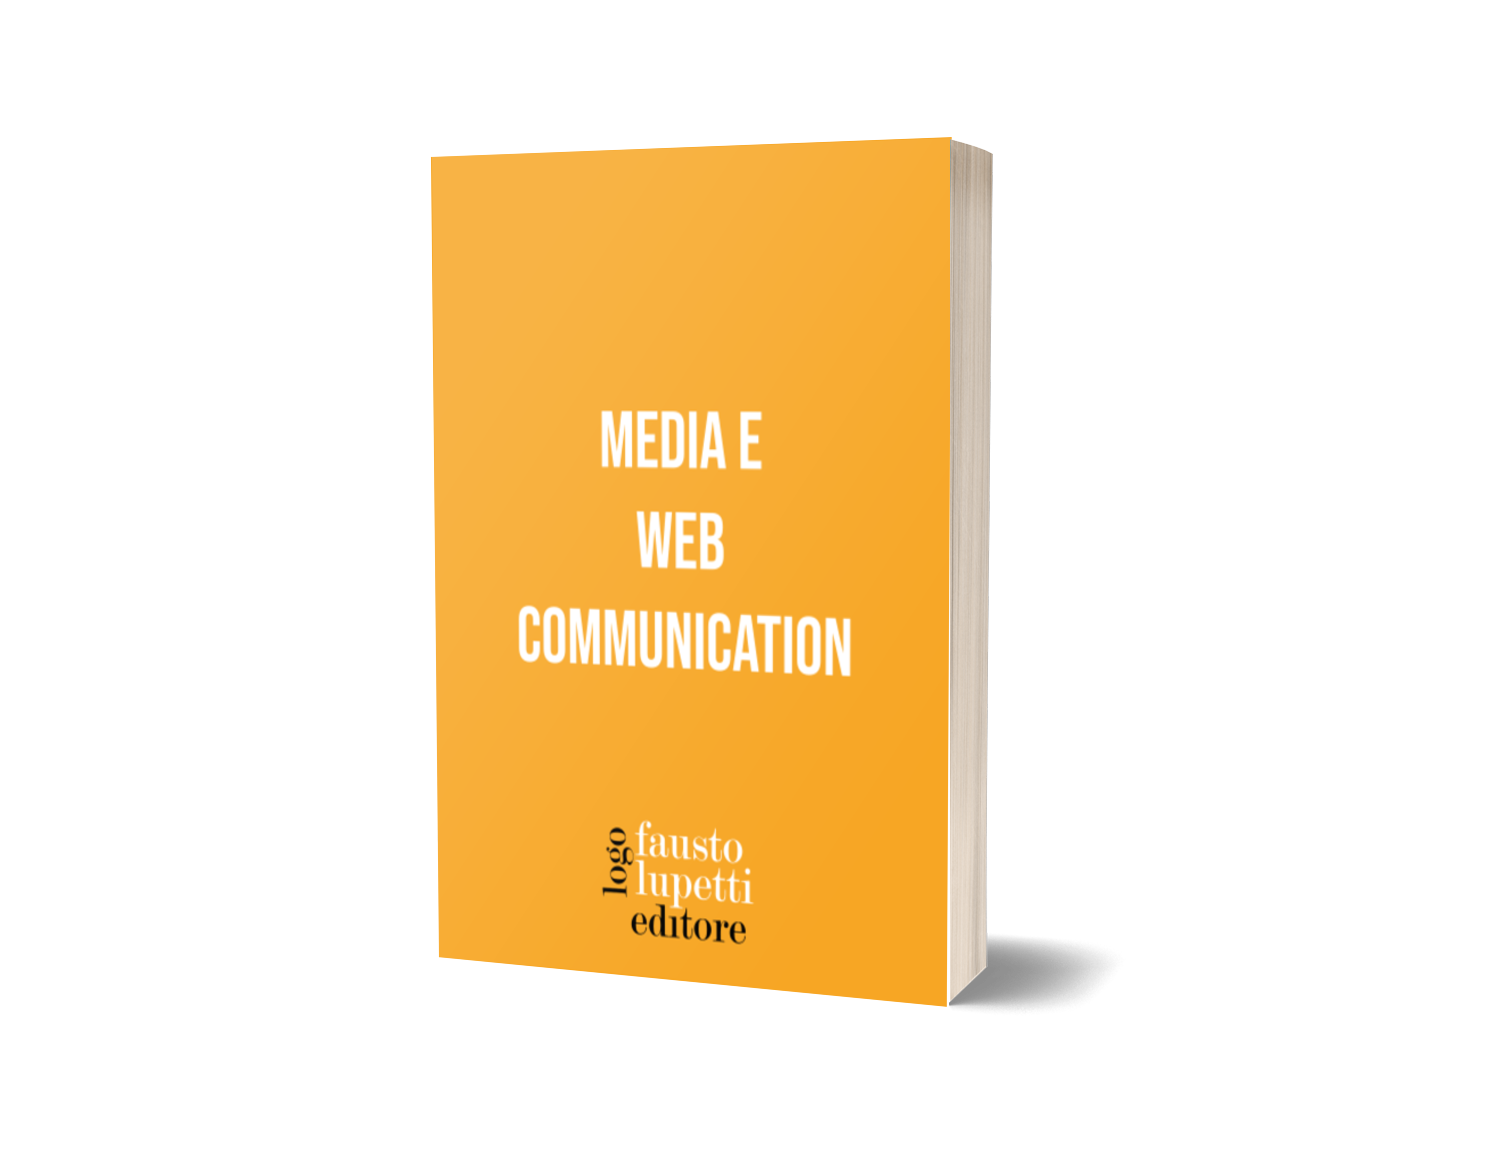 Media e web communication